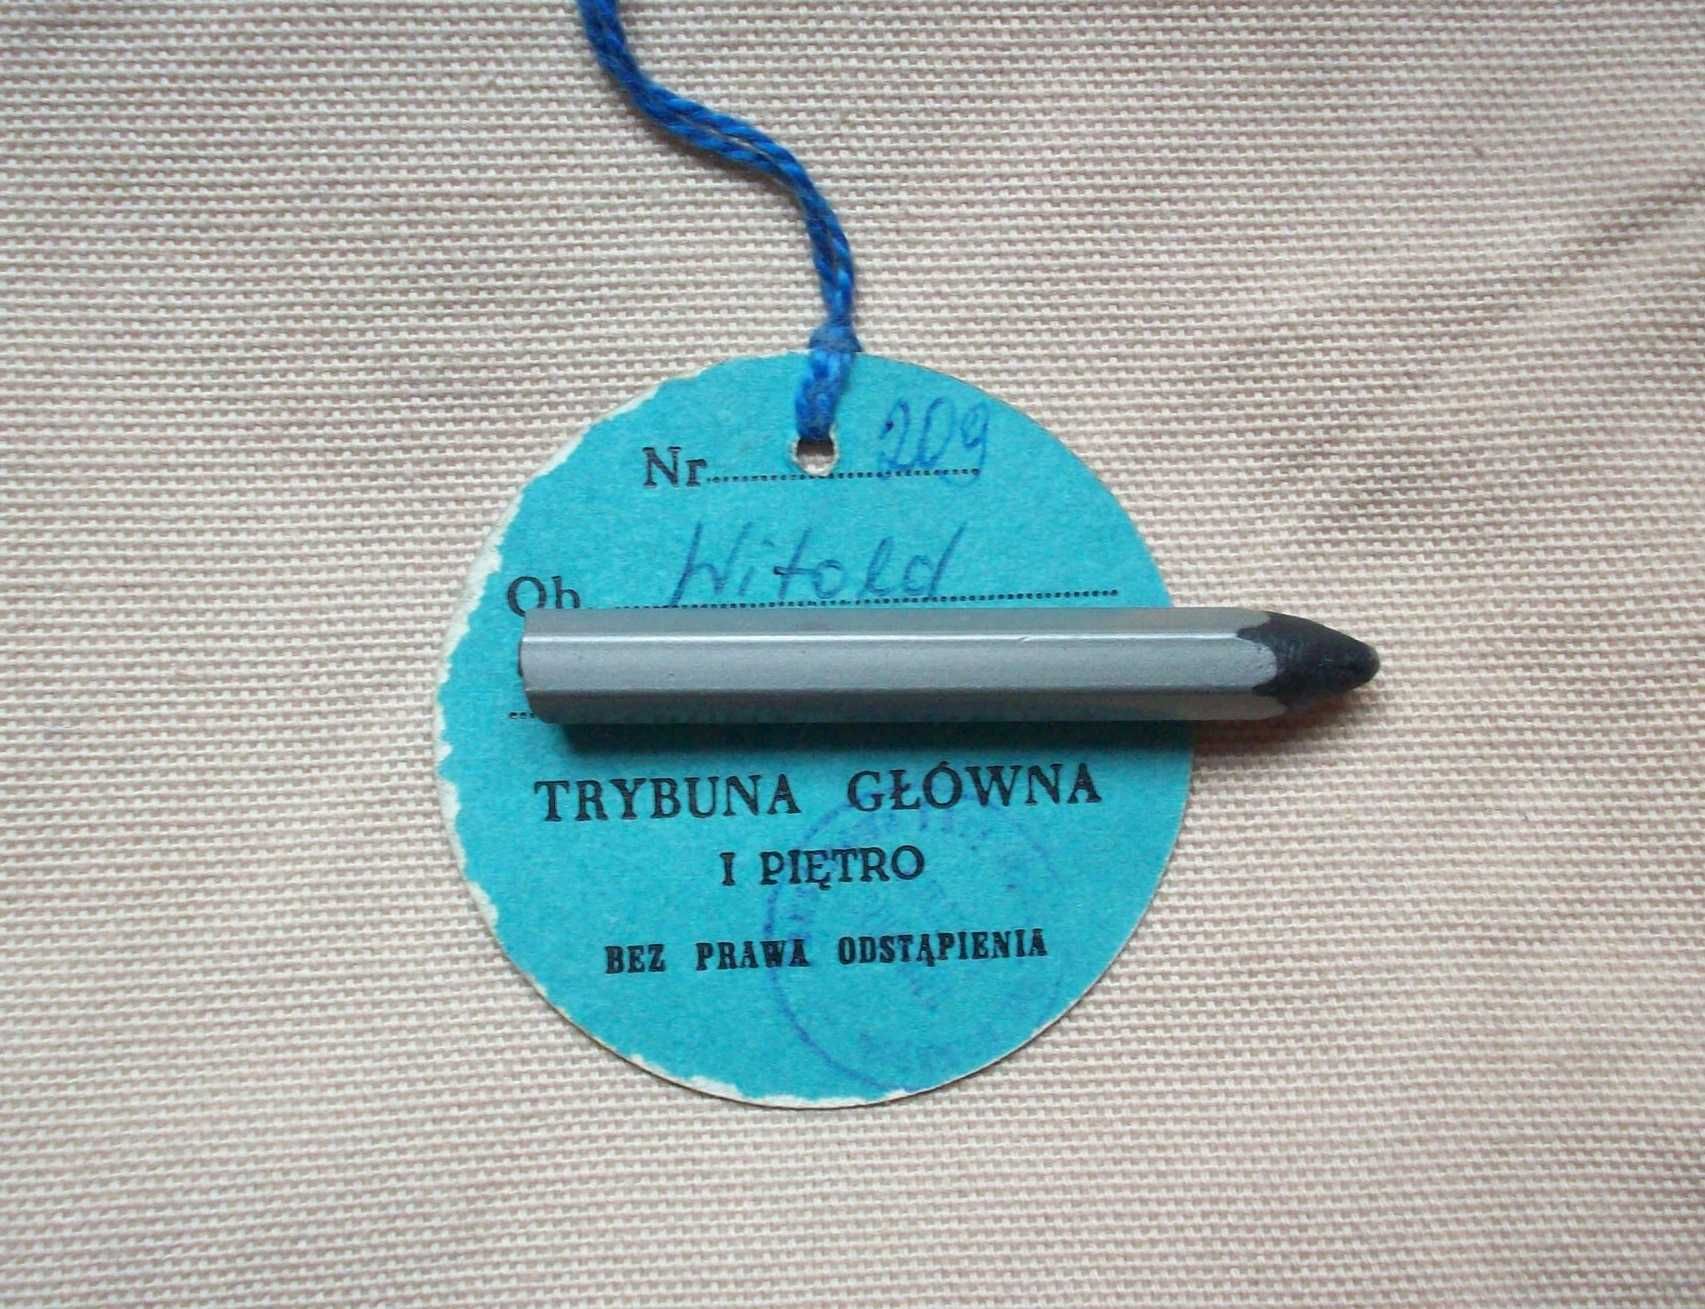 Państwowe Tory Wyścigów Konnych, bilet sezon 1969, trybuna.